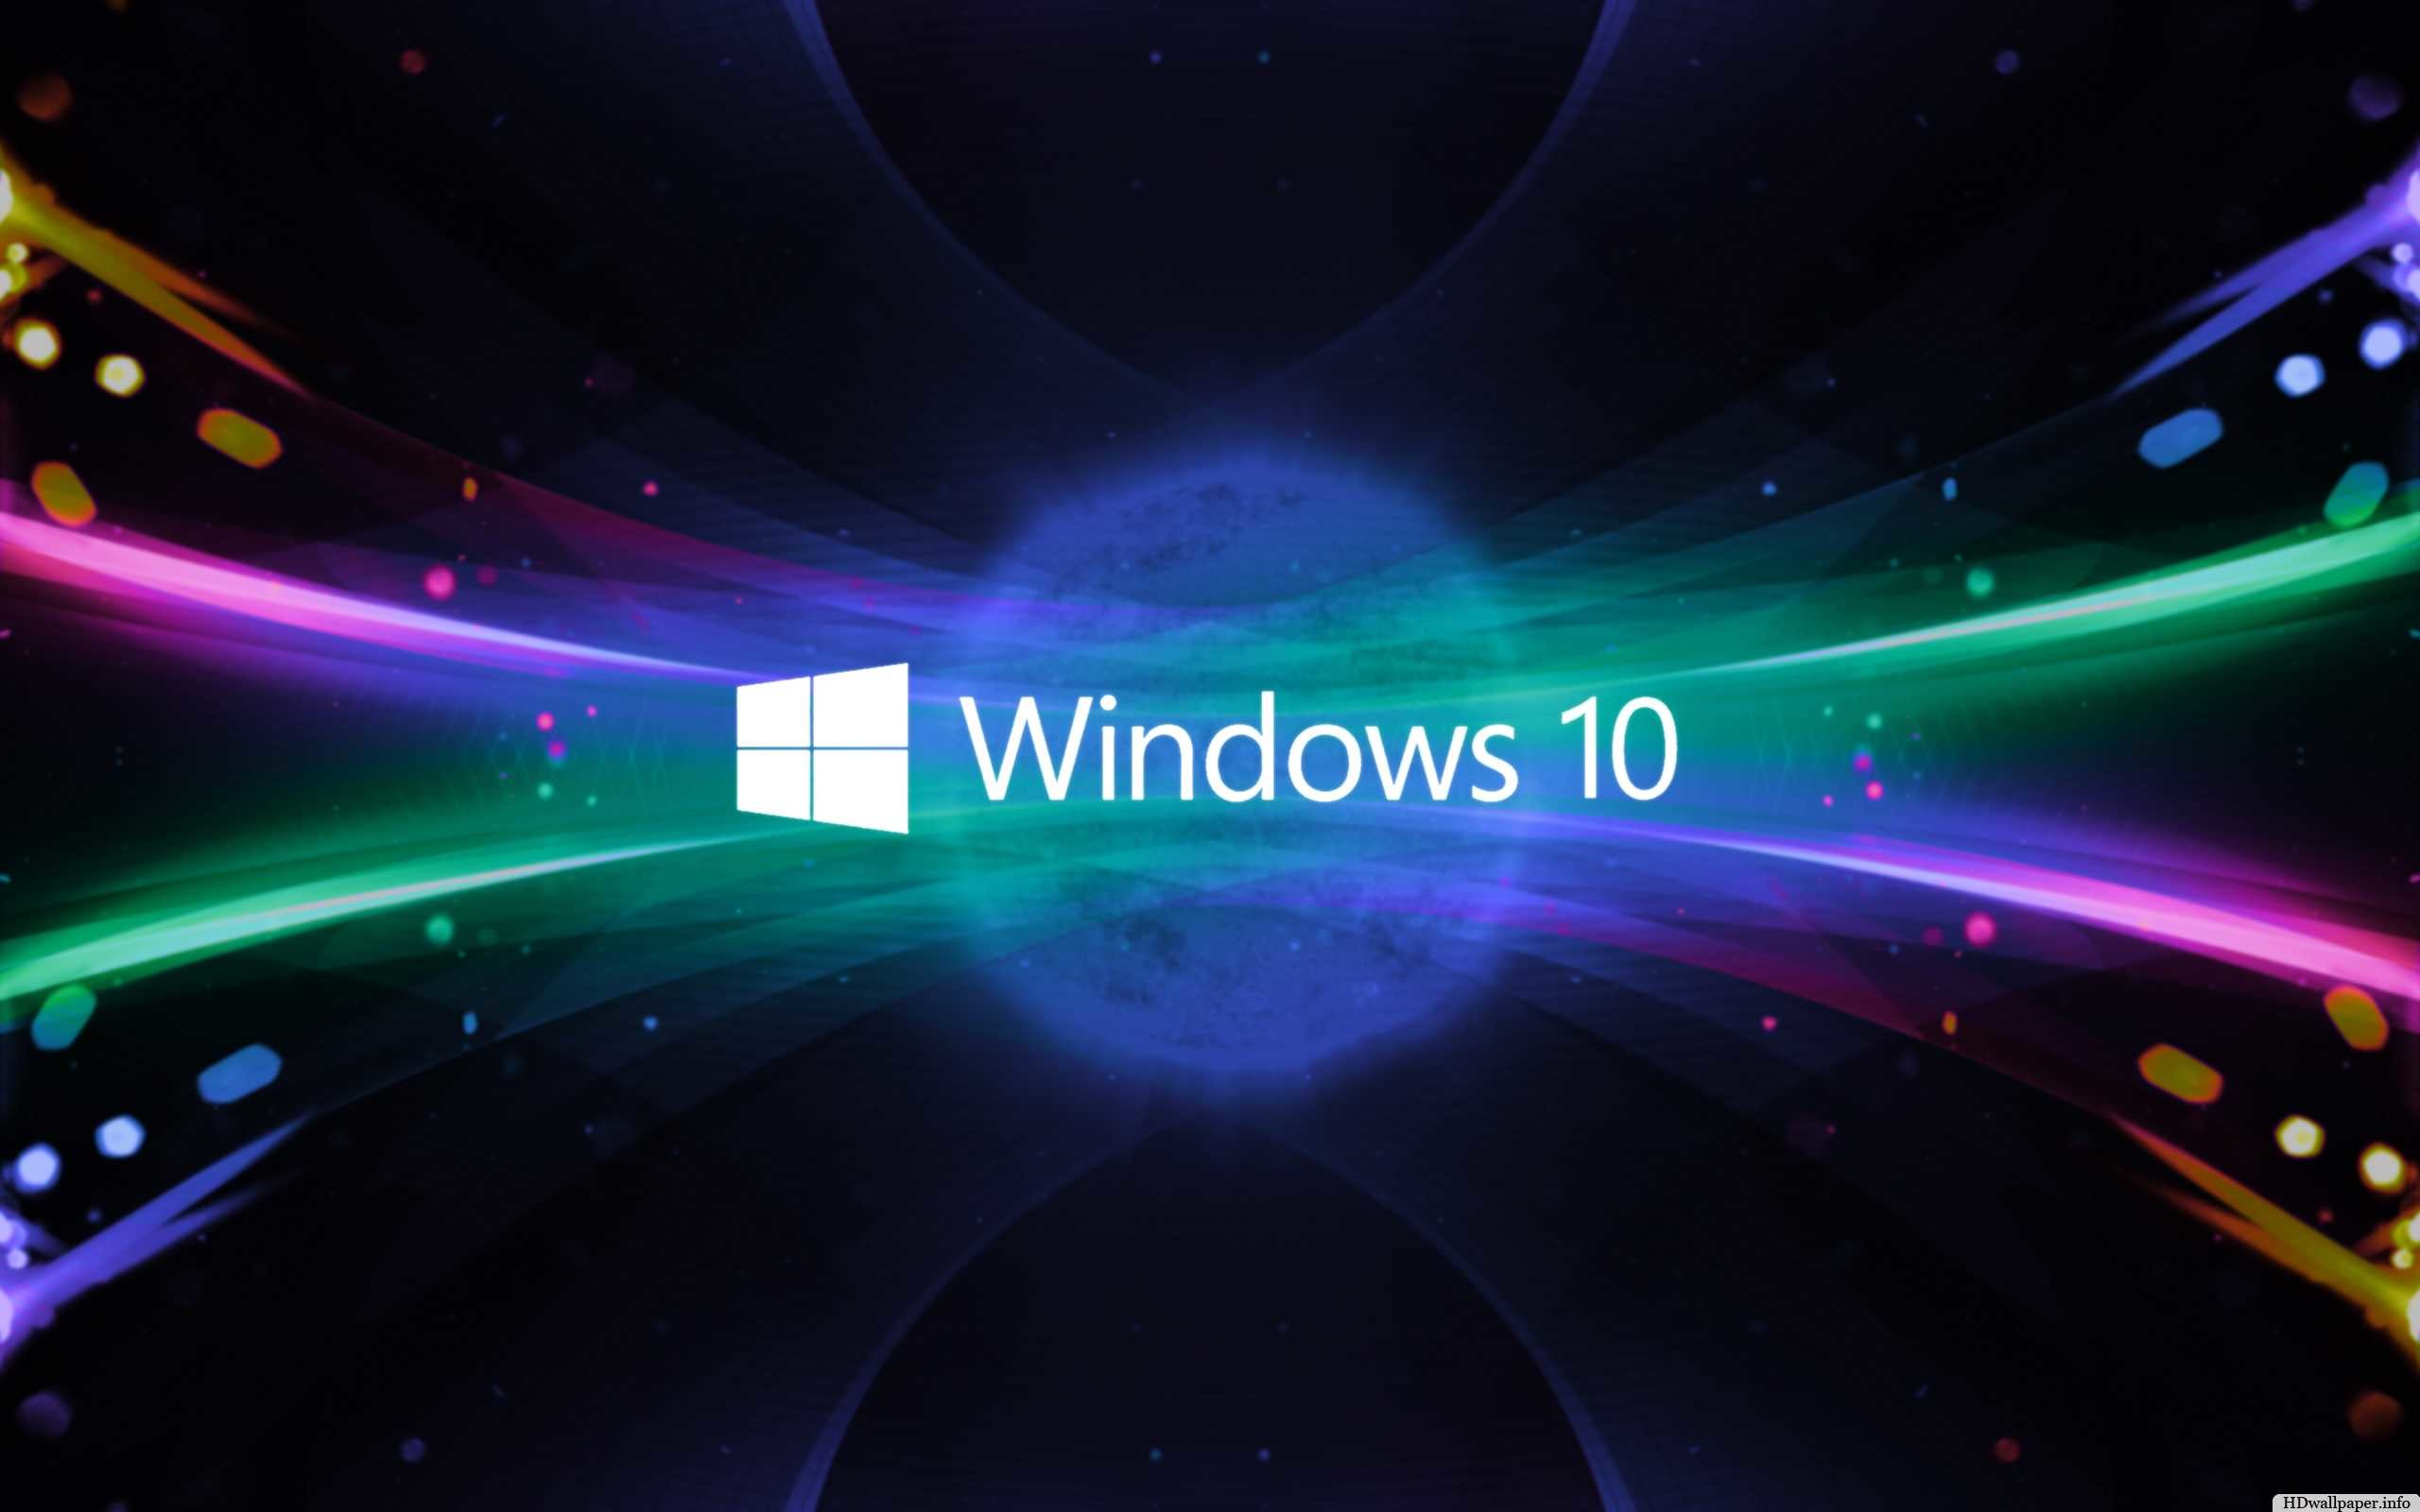 Bạn đang sử dụng hệ điều hành Windows 10? Hãy thay đổi màn hình nền của mình để tạo cảm giác mới mẻ và độc đáo. Với số lượng ảnh nền 3D đẹp mắt và được tối ưu cho Windows 10, chắc chắn sẽ làm bạn hài lòng.